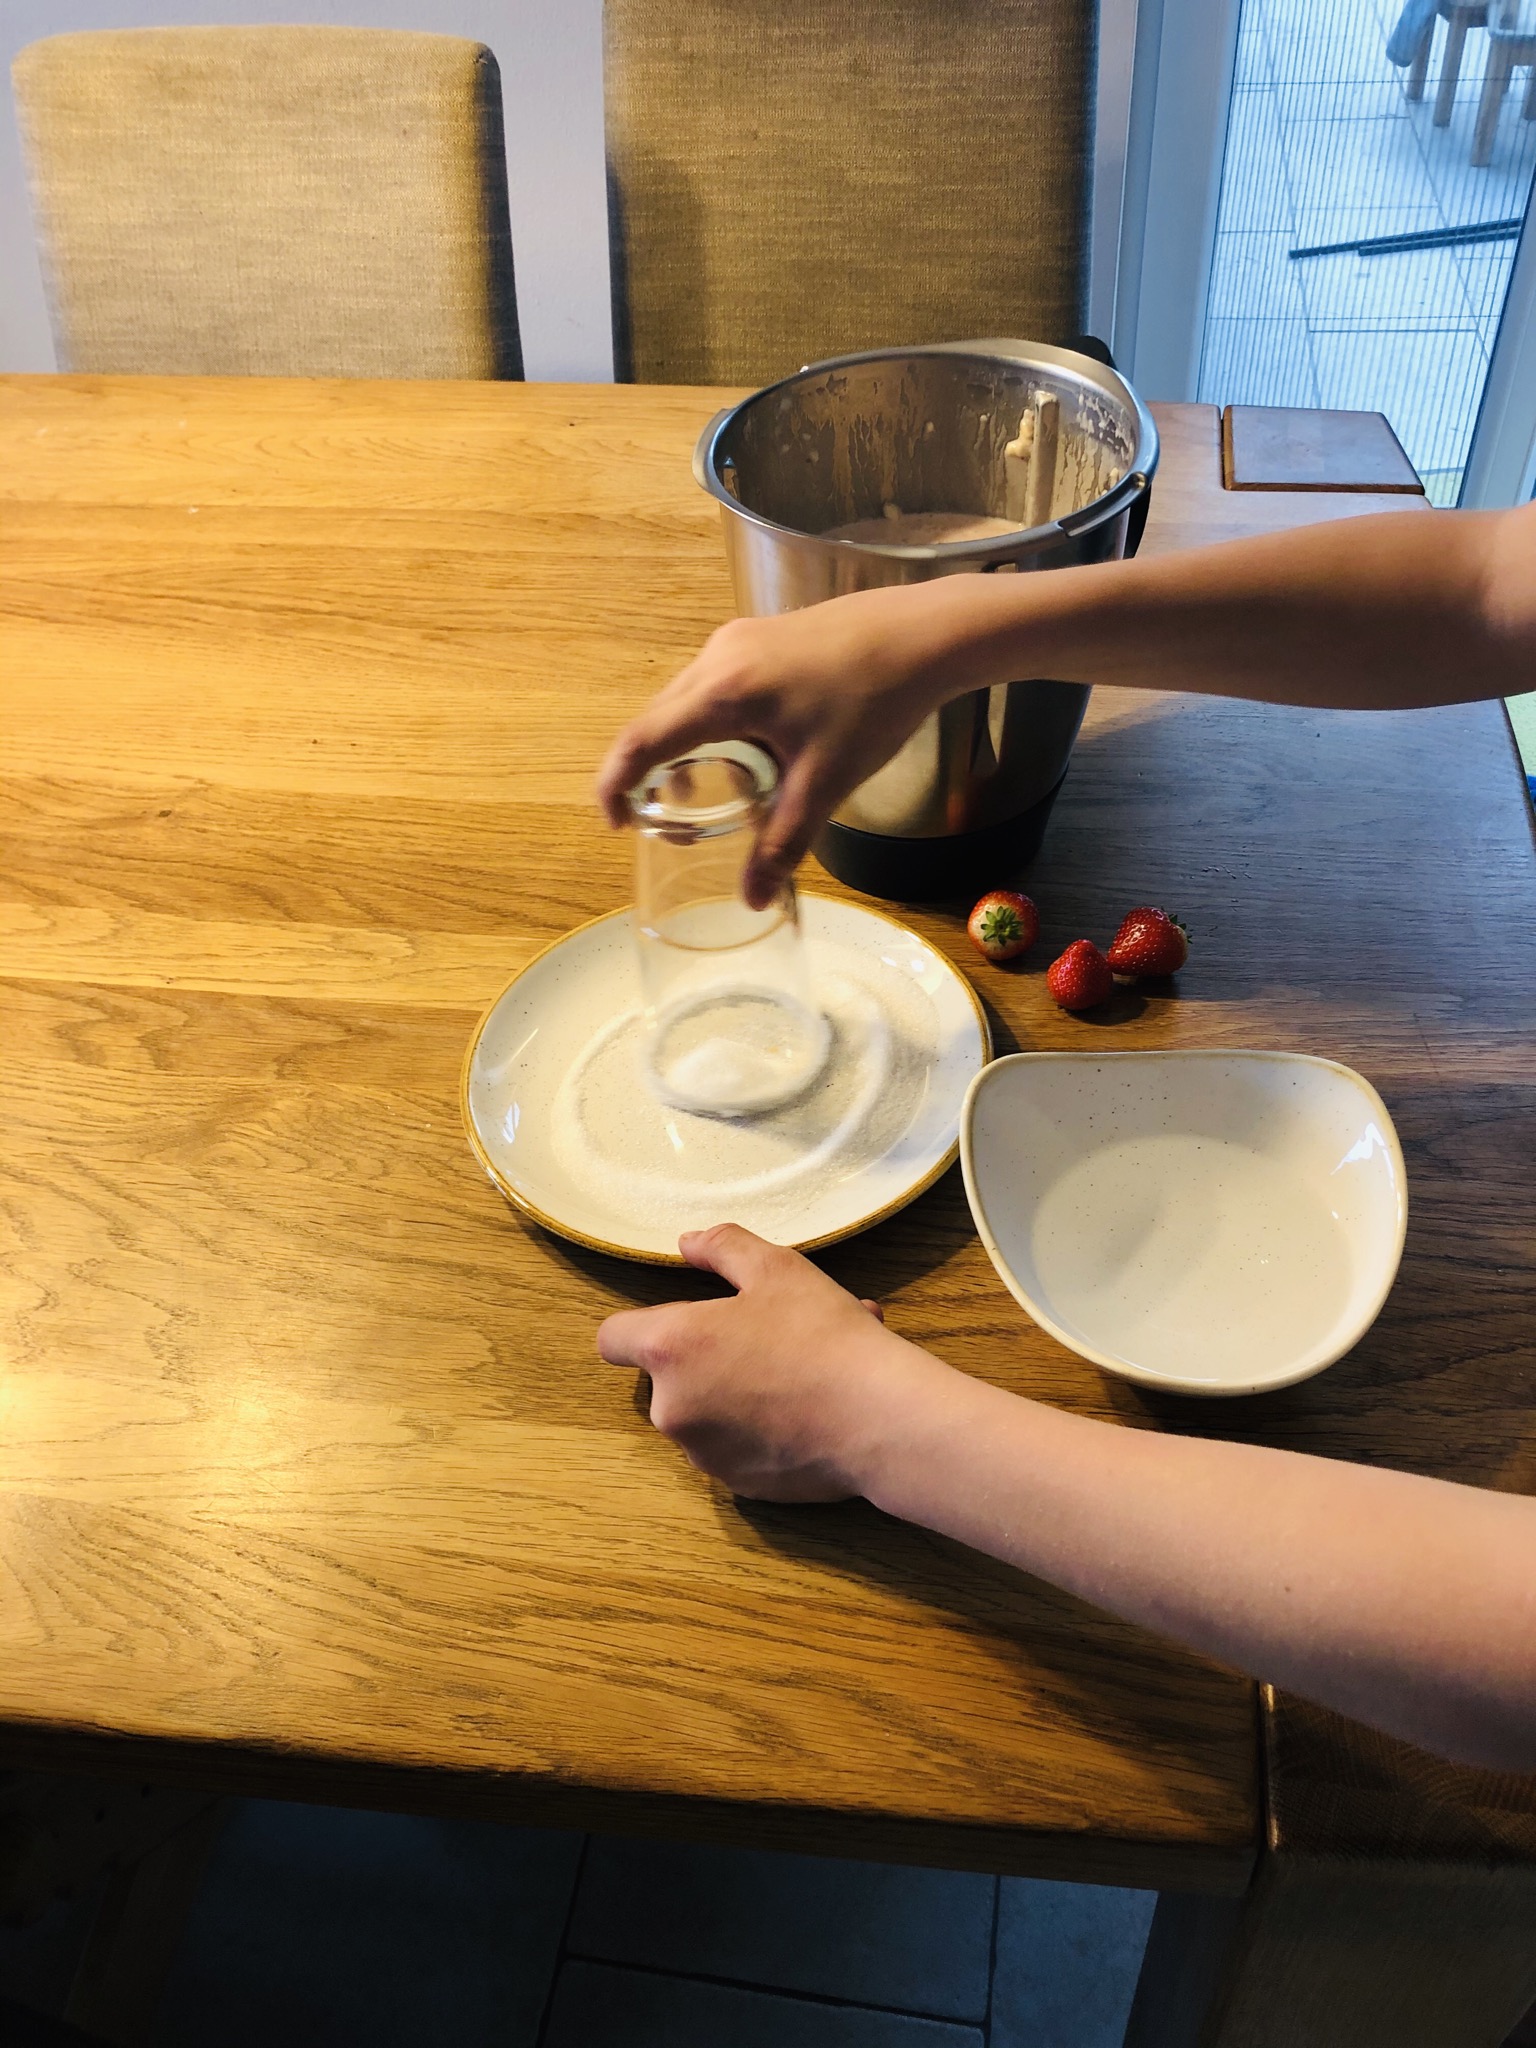 Bild zum Schritt 9 für das Bastel- und DIY-Abenteuer für Kinder: 'Im Anschluss Glasrand in Zucker drehen'